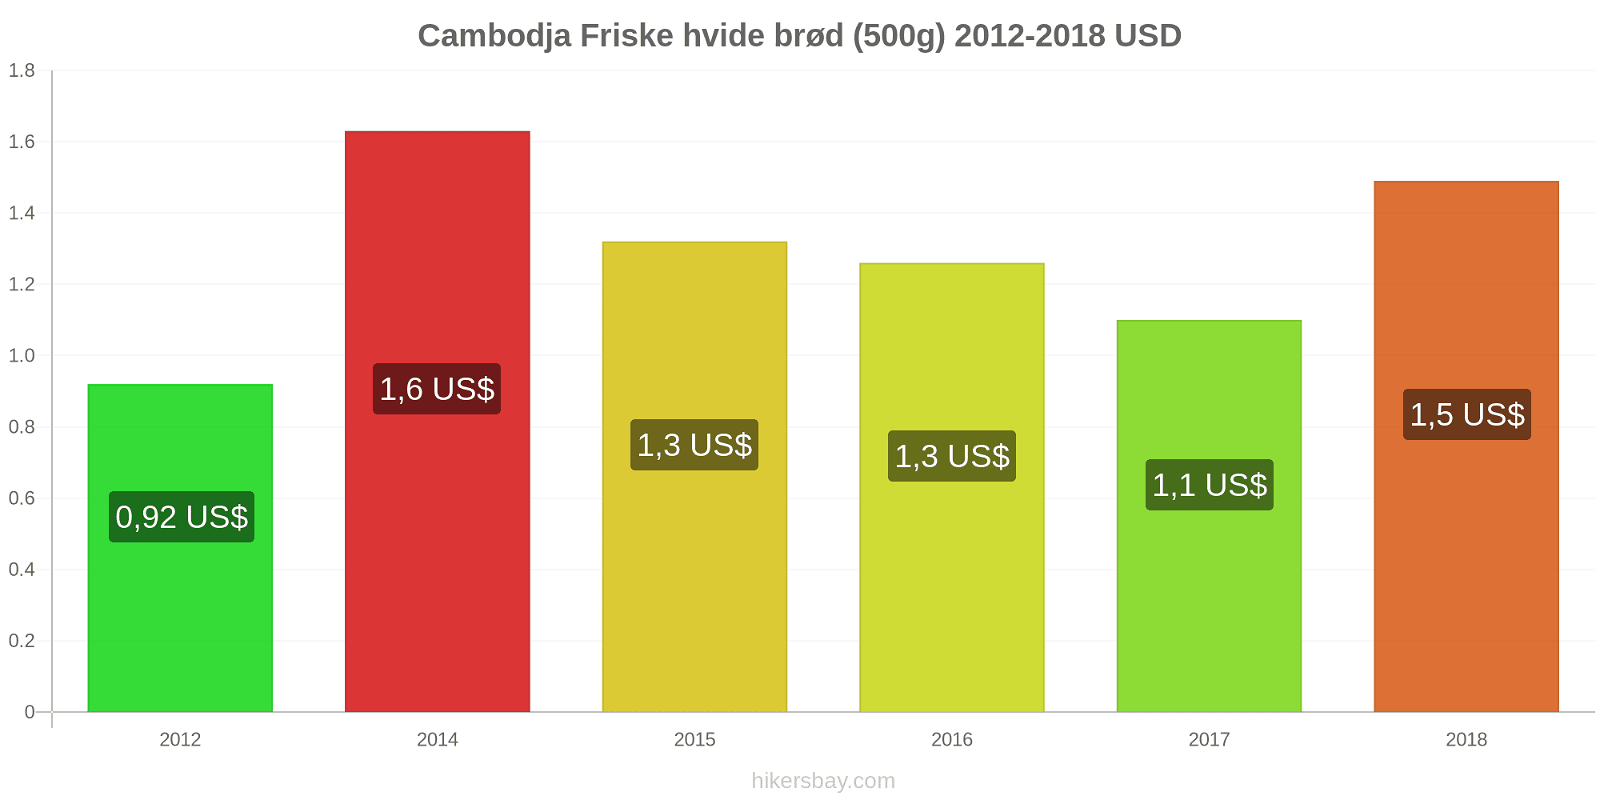 Cambodja prisændringer Friske hvide brød (500g) hikersbay.com